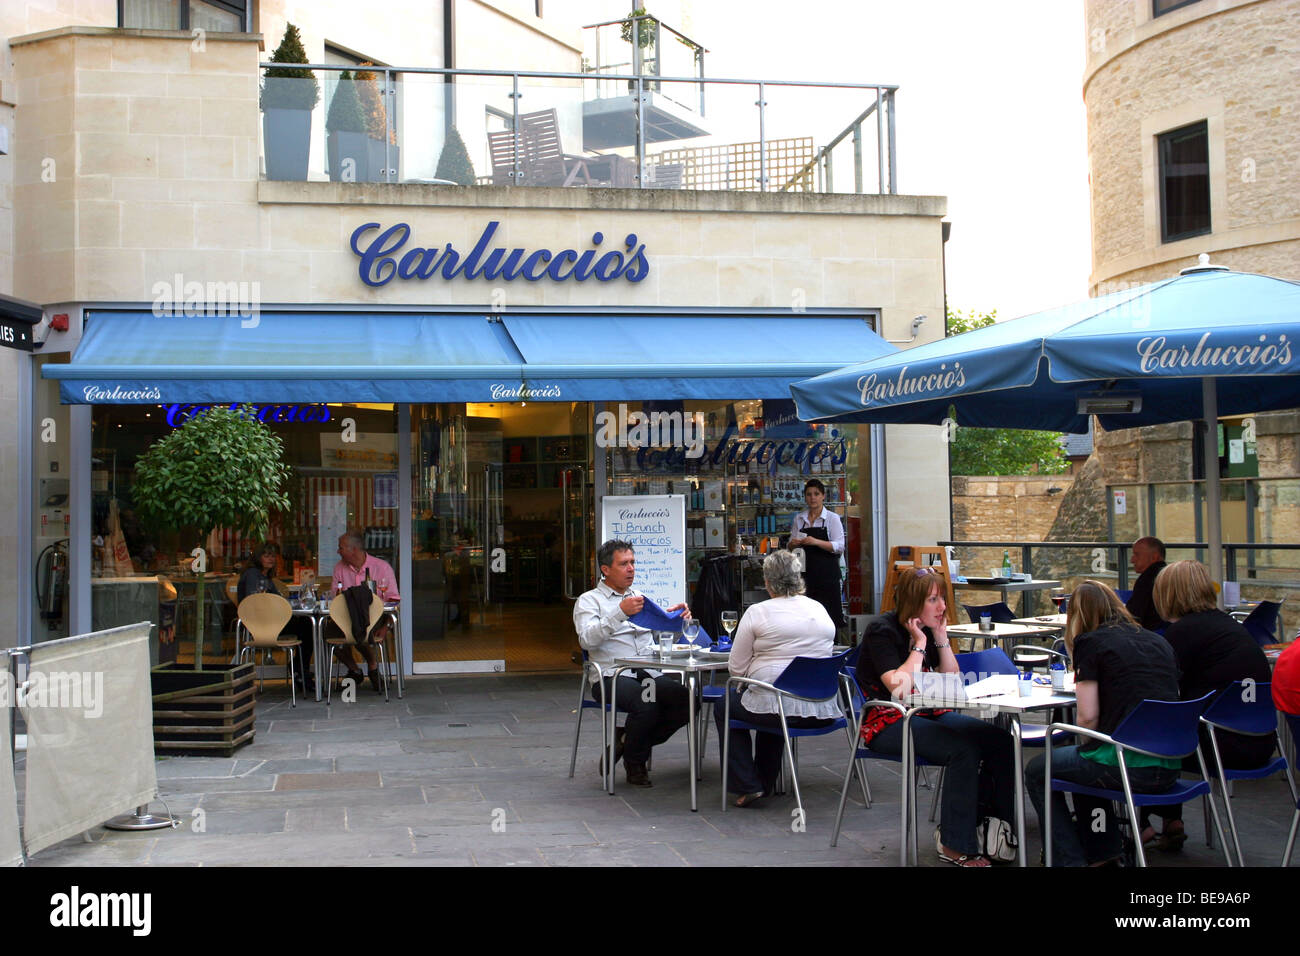 Carluccio's Cafe, Oxford, England, UK Stock Photo